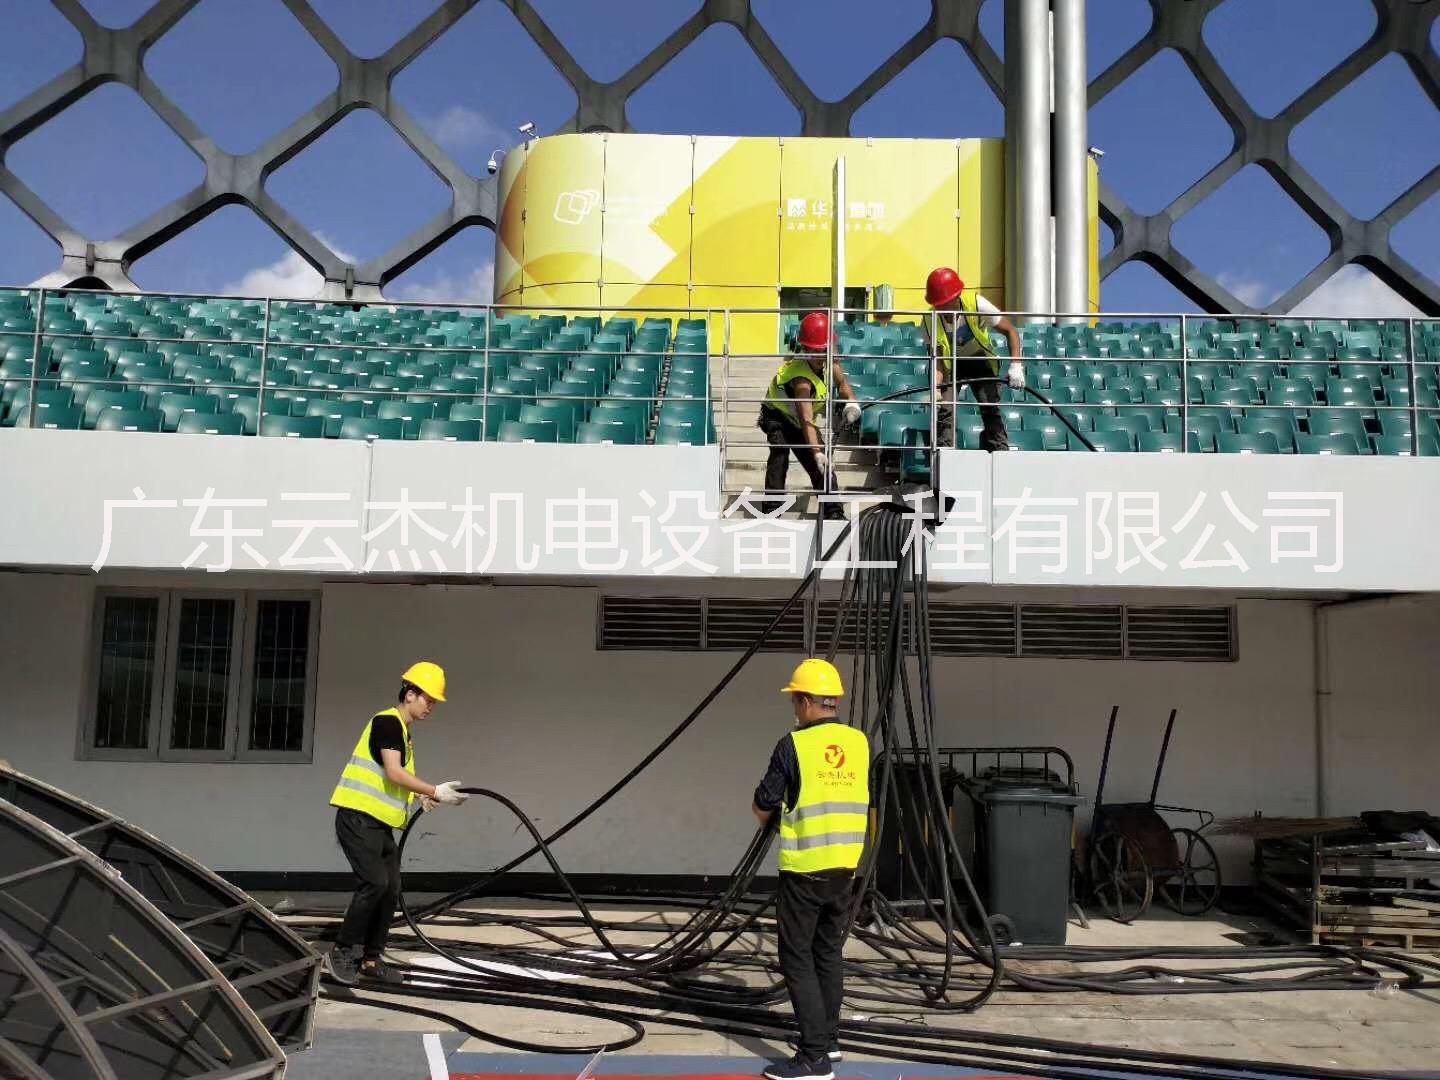 上海电缆线出租热线电话   电缆线租凭专业安装厂家 价格低  24小时施工图片